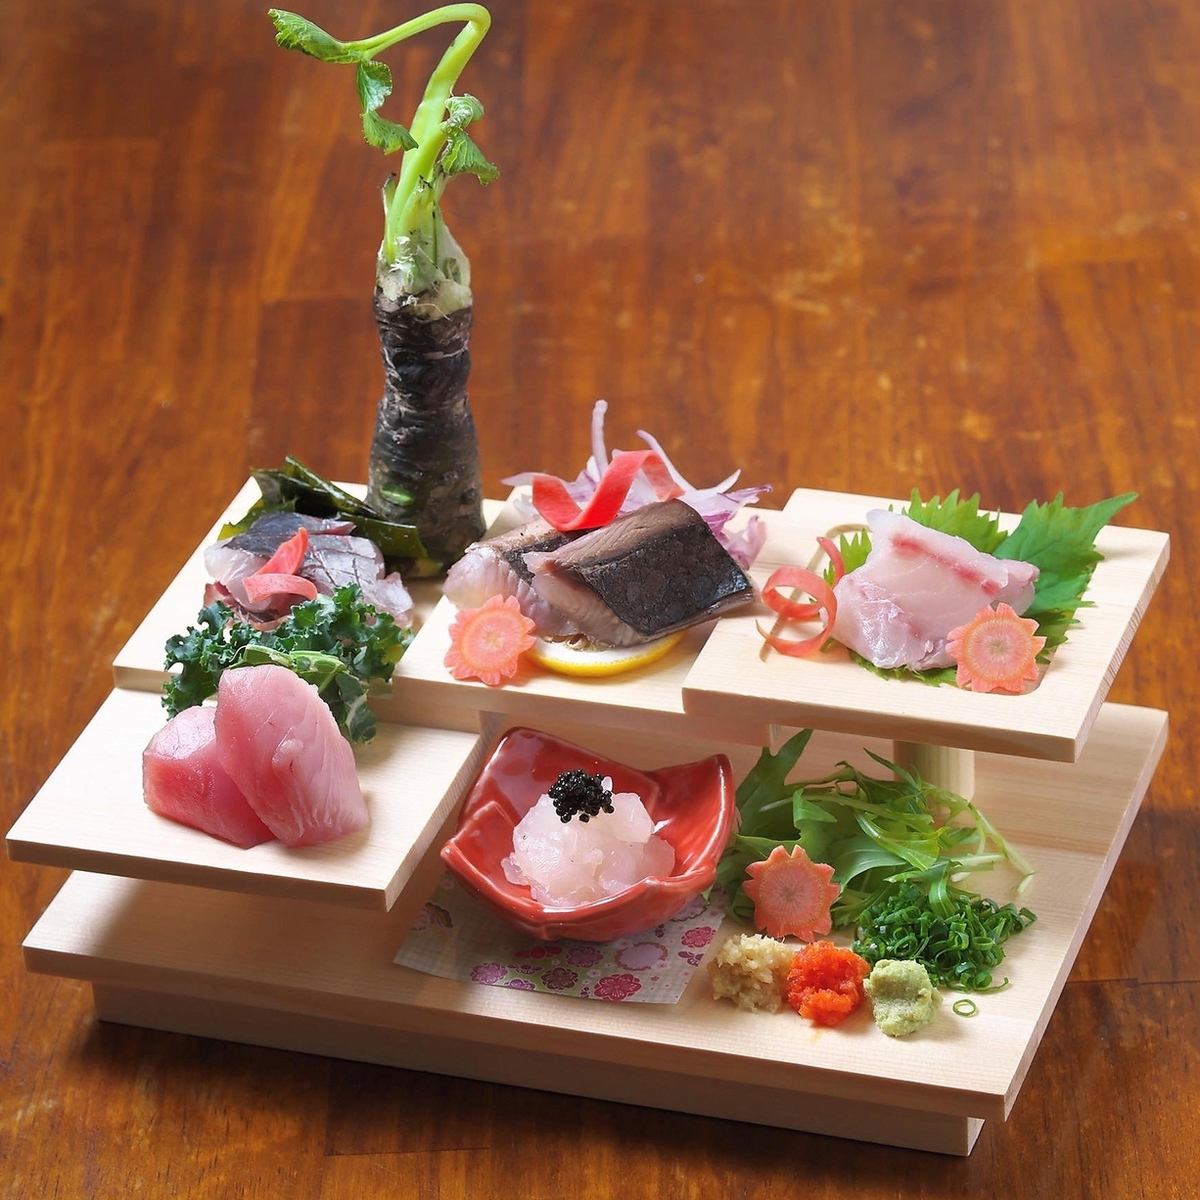 糸島の新鮮な魚介を、贅沢にお楽しみください。